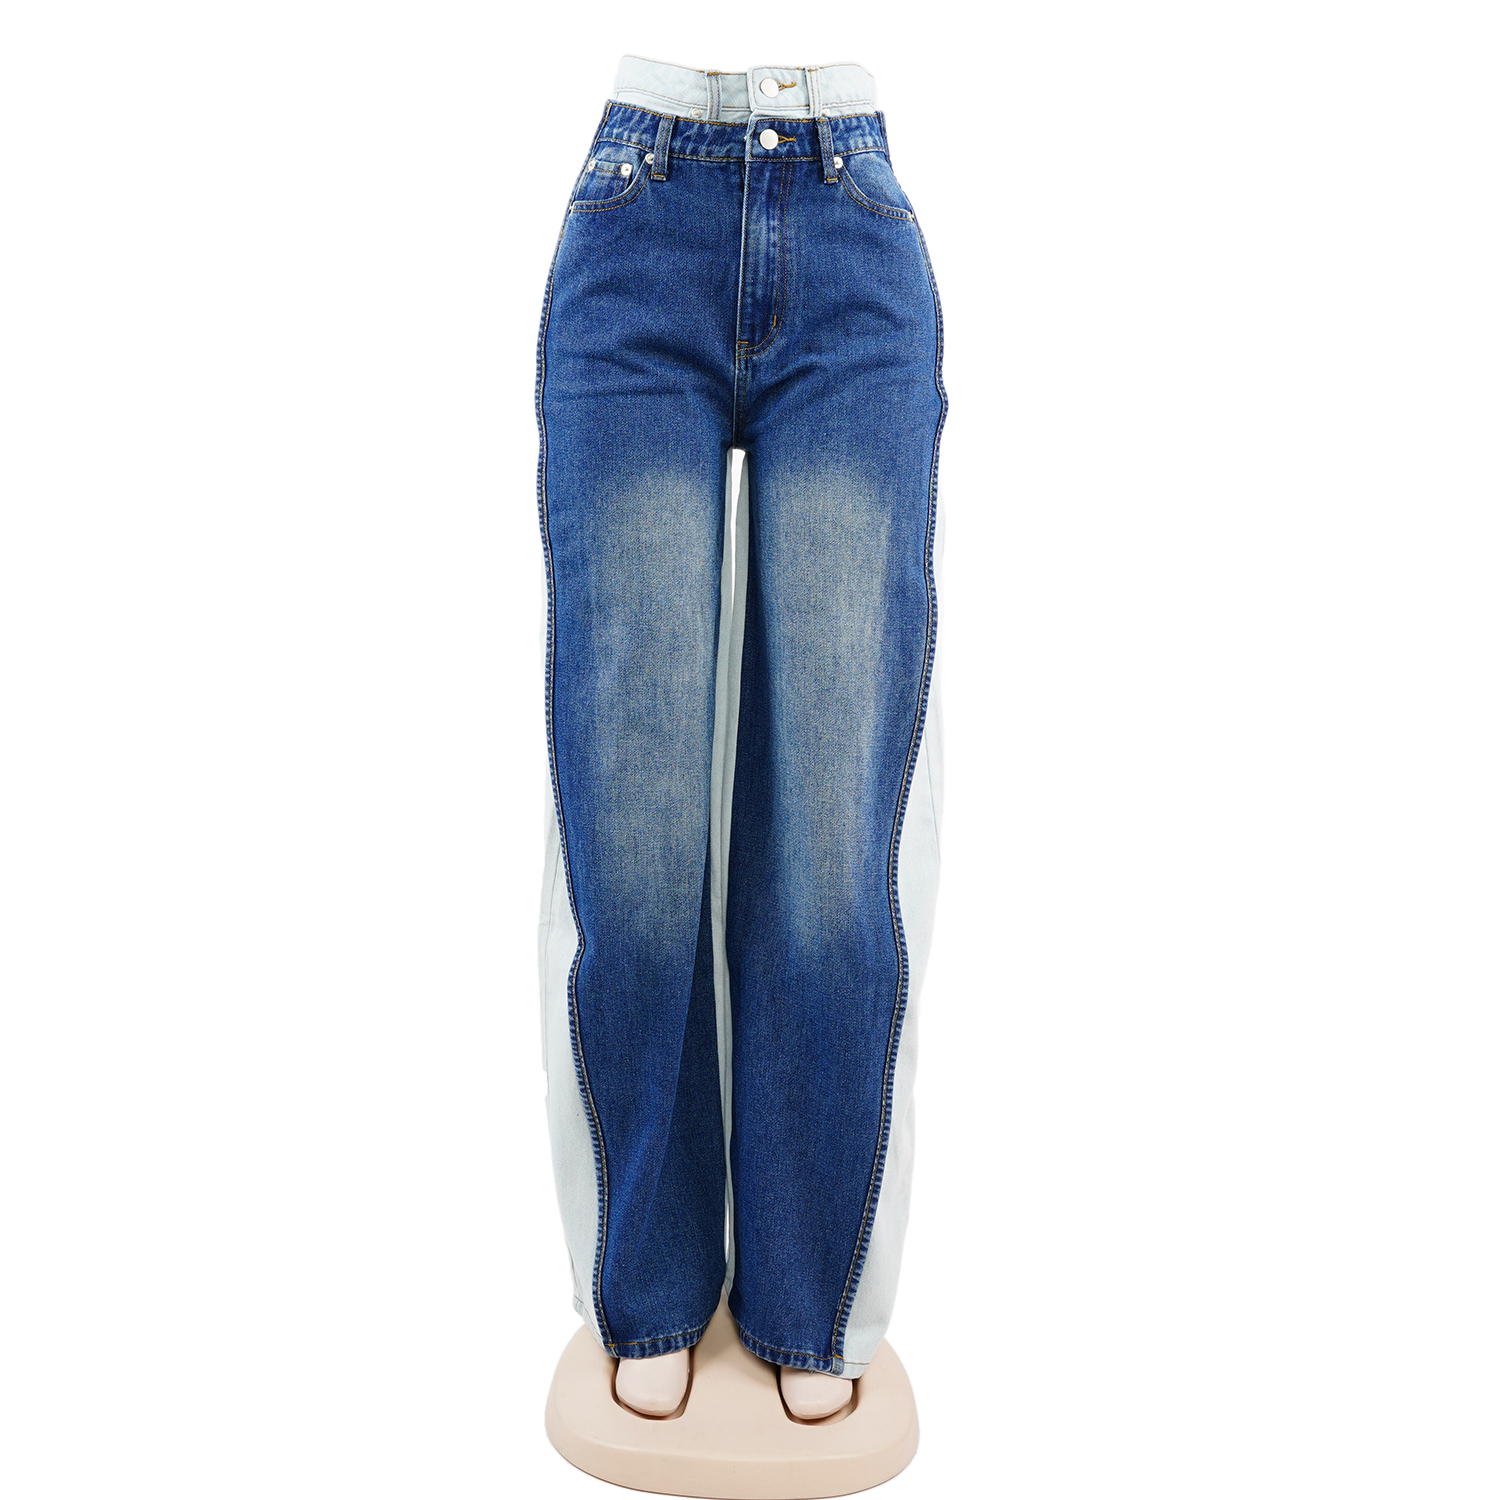 SKYKINGDOM new design women jeans wide leg pants two tone blue denim jeans women